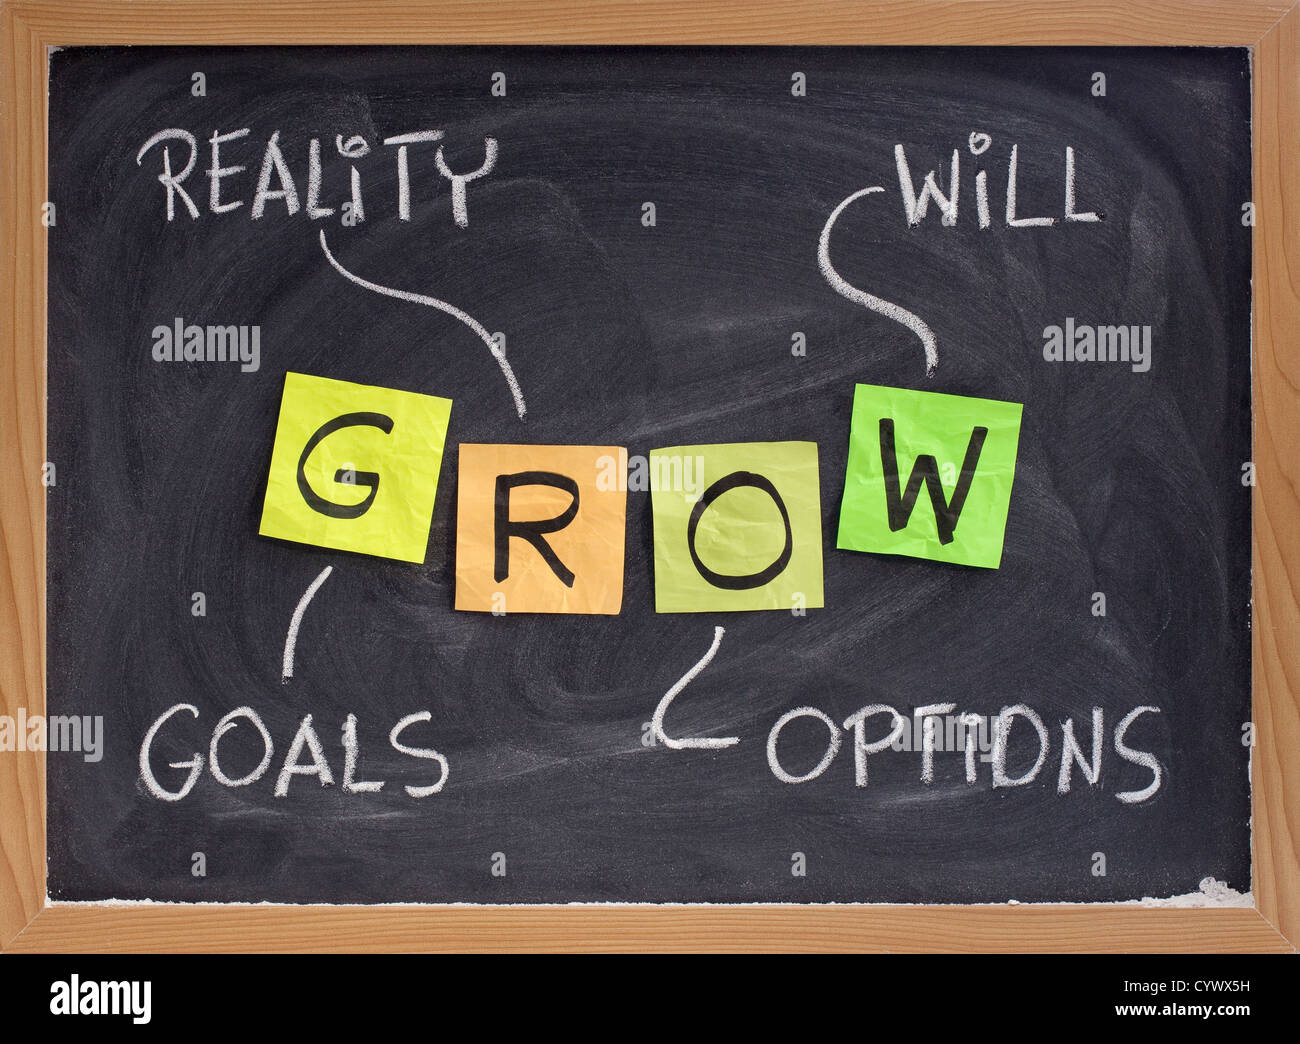 Croître (objectifs, réalité, options, VA) - life coaching motivation l'acronyme, de l'écriture à la craie et des notes autocollantes sur tableau noir Banque D'Images